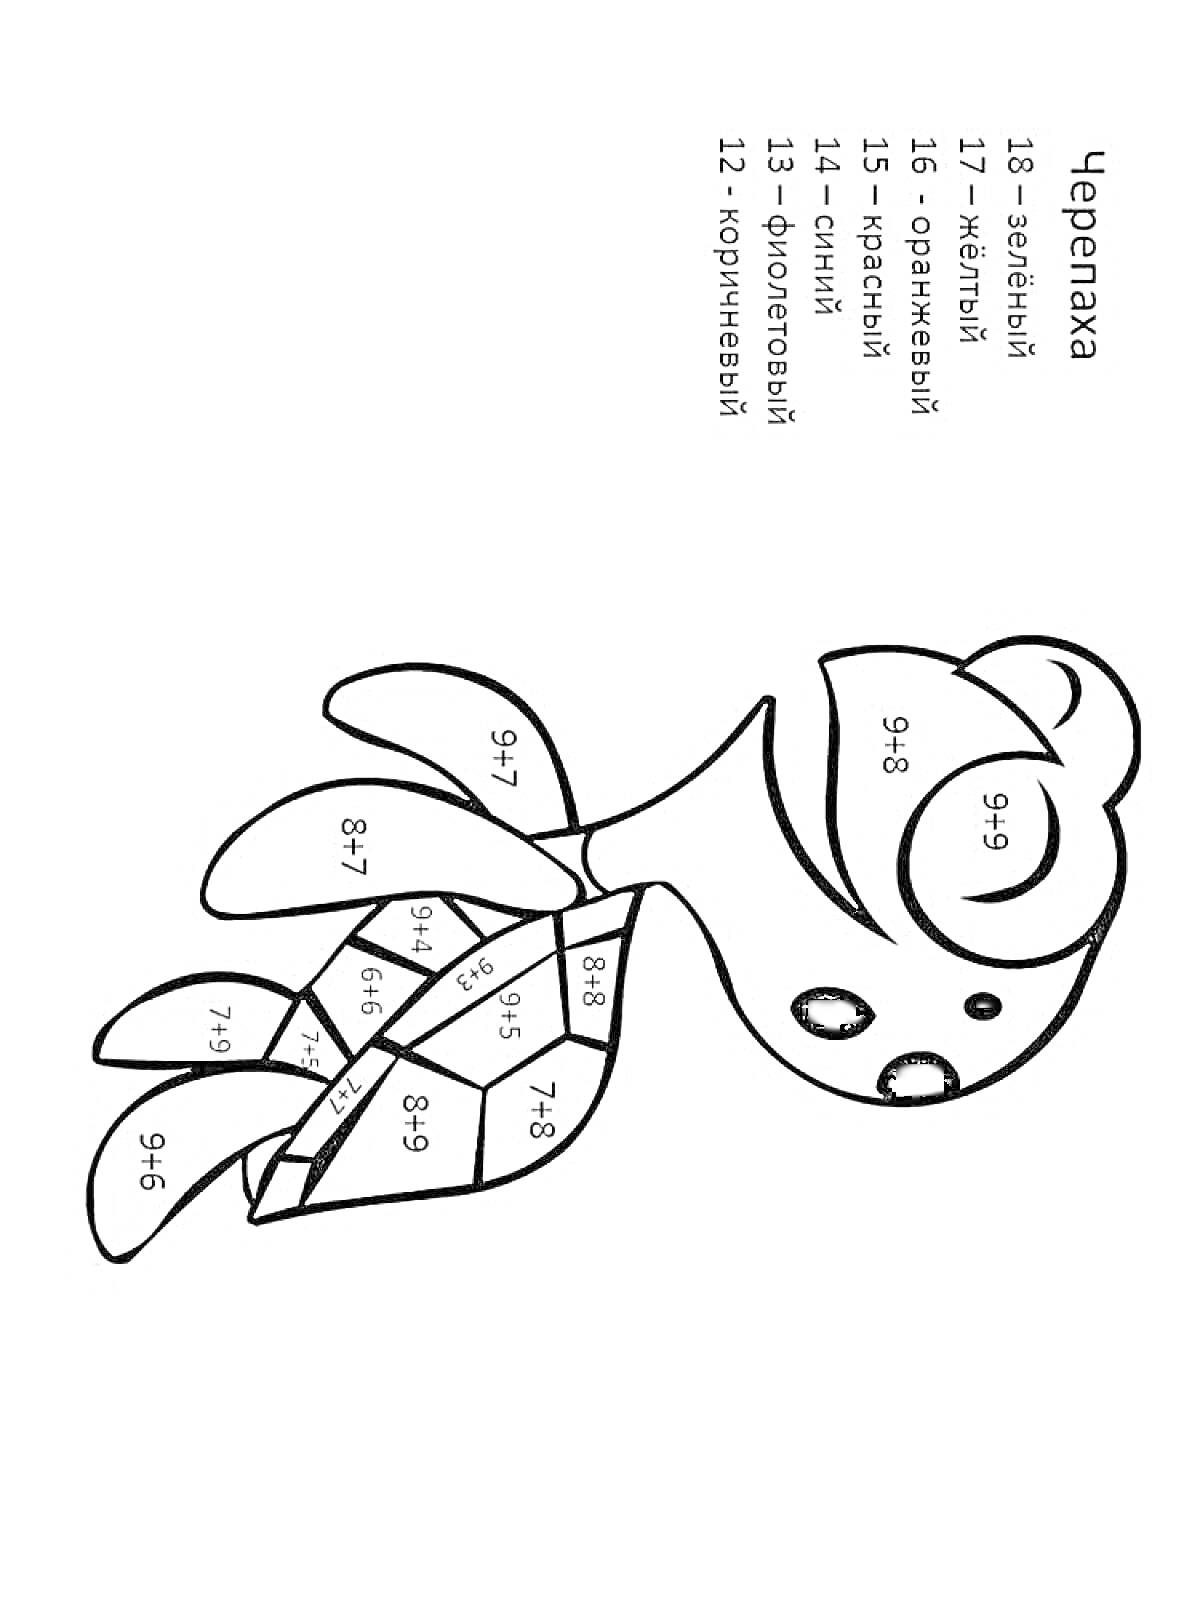 Раскраска Черепаха с примерами на сложение